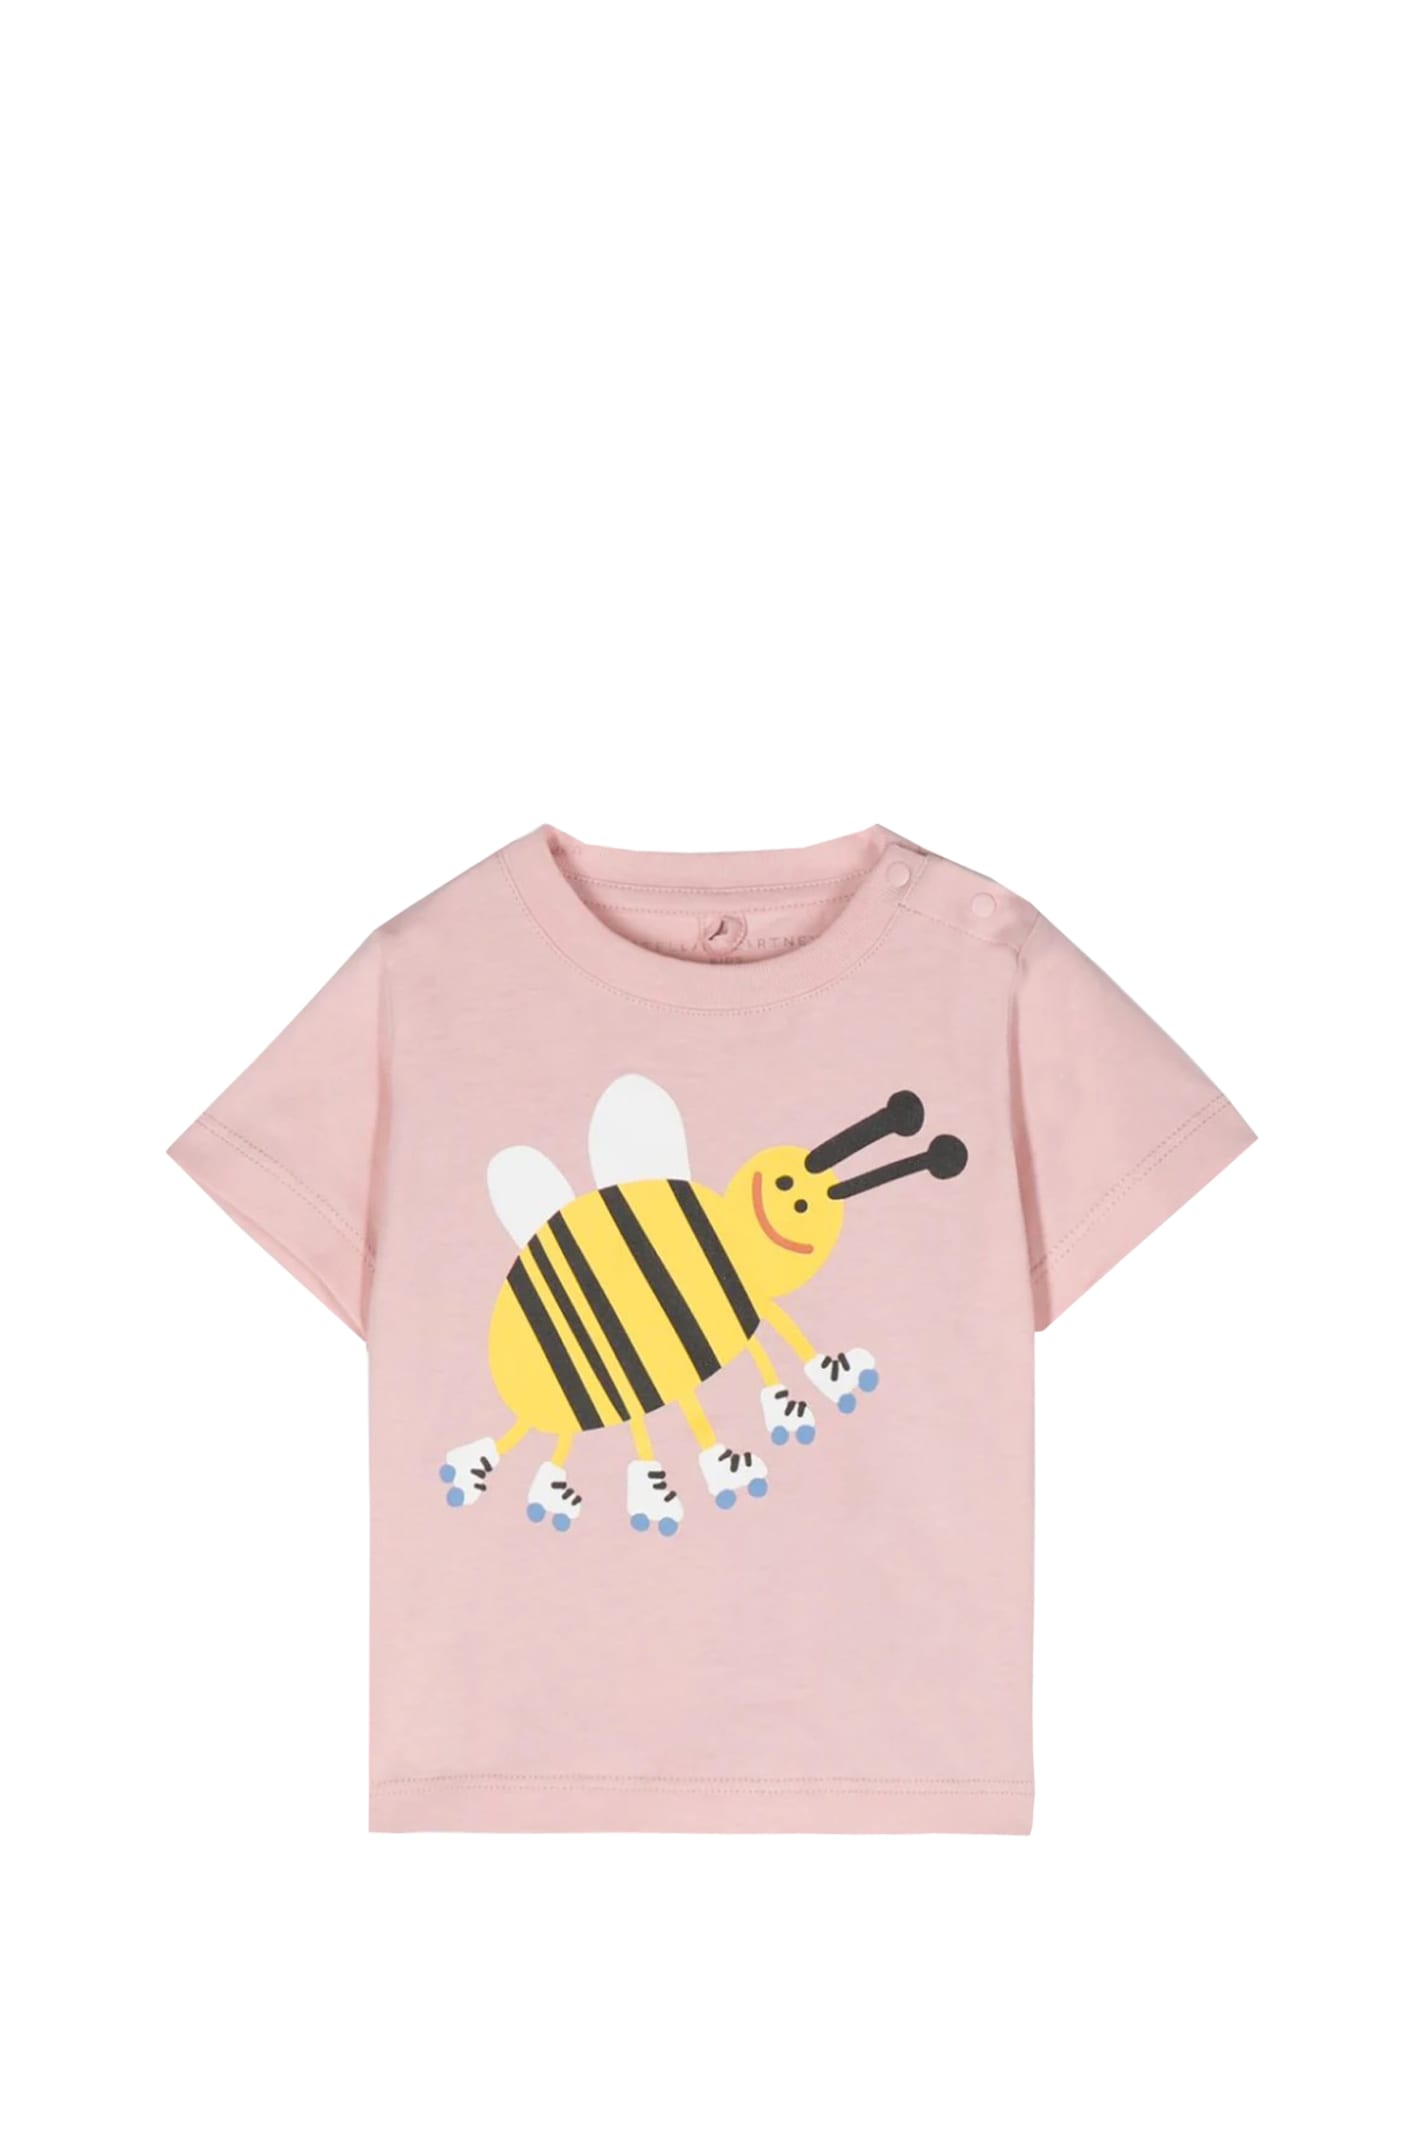 Stella Mccartney Babies' Cotton T-shirt In Rose